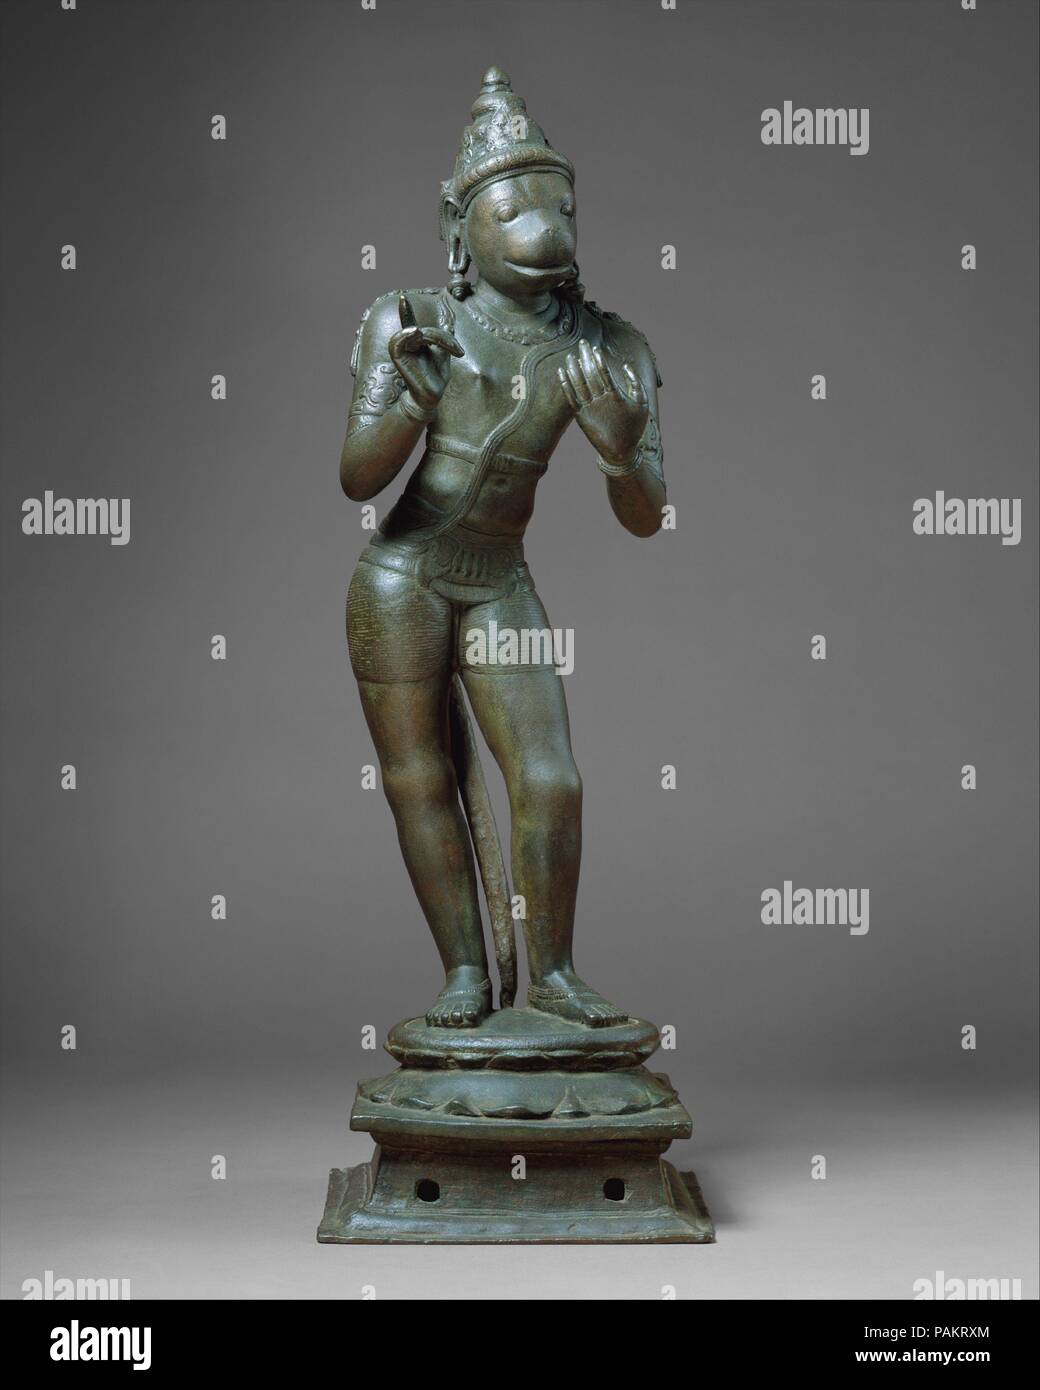 Hanuman conversando. Cultura: India (Tamil Nadu). Dimensioni: H. 25 3/8 in. (64,5 cm); W. 7 1/4 in. (18,4 cm). Data: XI secolo. Una delle più attraenti divinità Indù, Hanuman il coraggio, il coraggio e la fedeltà dei clienti in tutto il Ramayana epic sono rinomati. Qui egli gesti inchinavano davanti a Rama con la sua sollevata la mano sinistra mentre si inserisce nel dibattito animato con il suo Signore. Questa scultura fu parte di un ensemble con Rama, Sita e Lakshmana al suo centro. È stato incluso tra un assemblaggio di icone processionale tenuti dai templi Vaishnava in India del Sud festival per l'uso. Tipico dei Chola-periodo repr Foto Stock